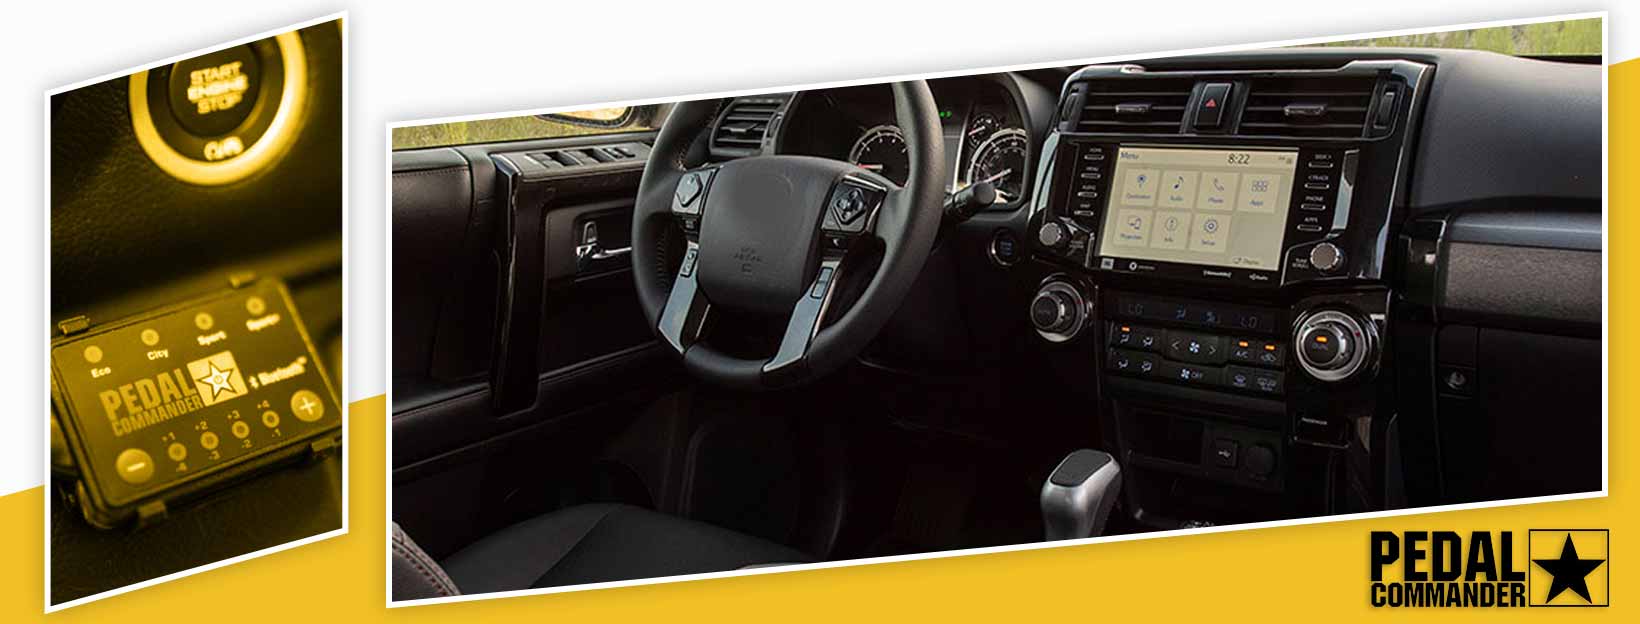 Pedal Commander for Toyota 4Runner - interior